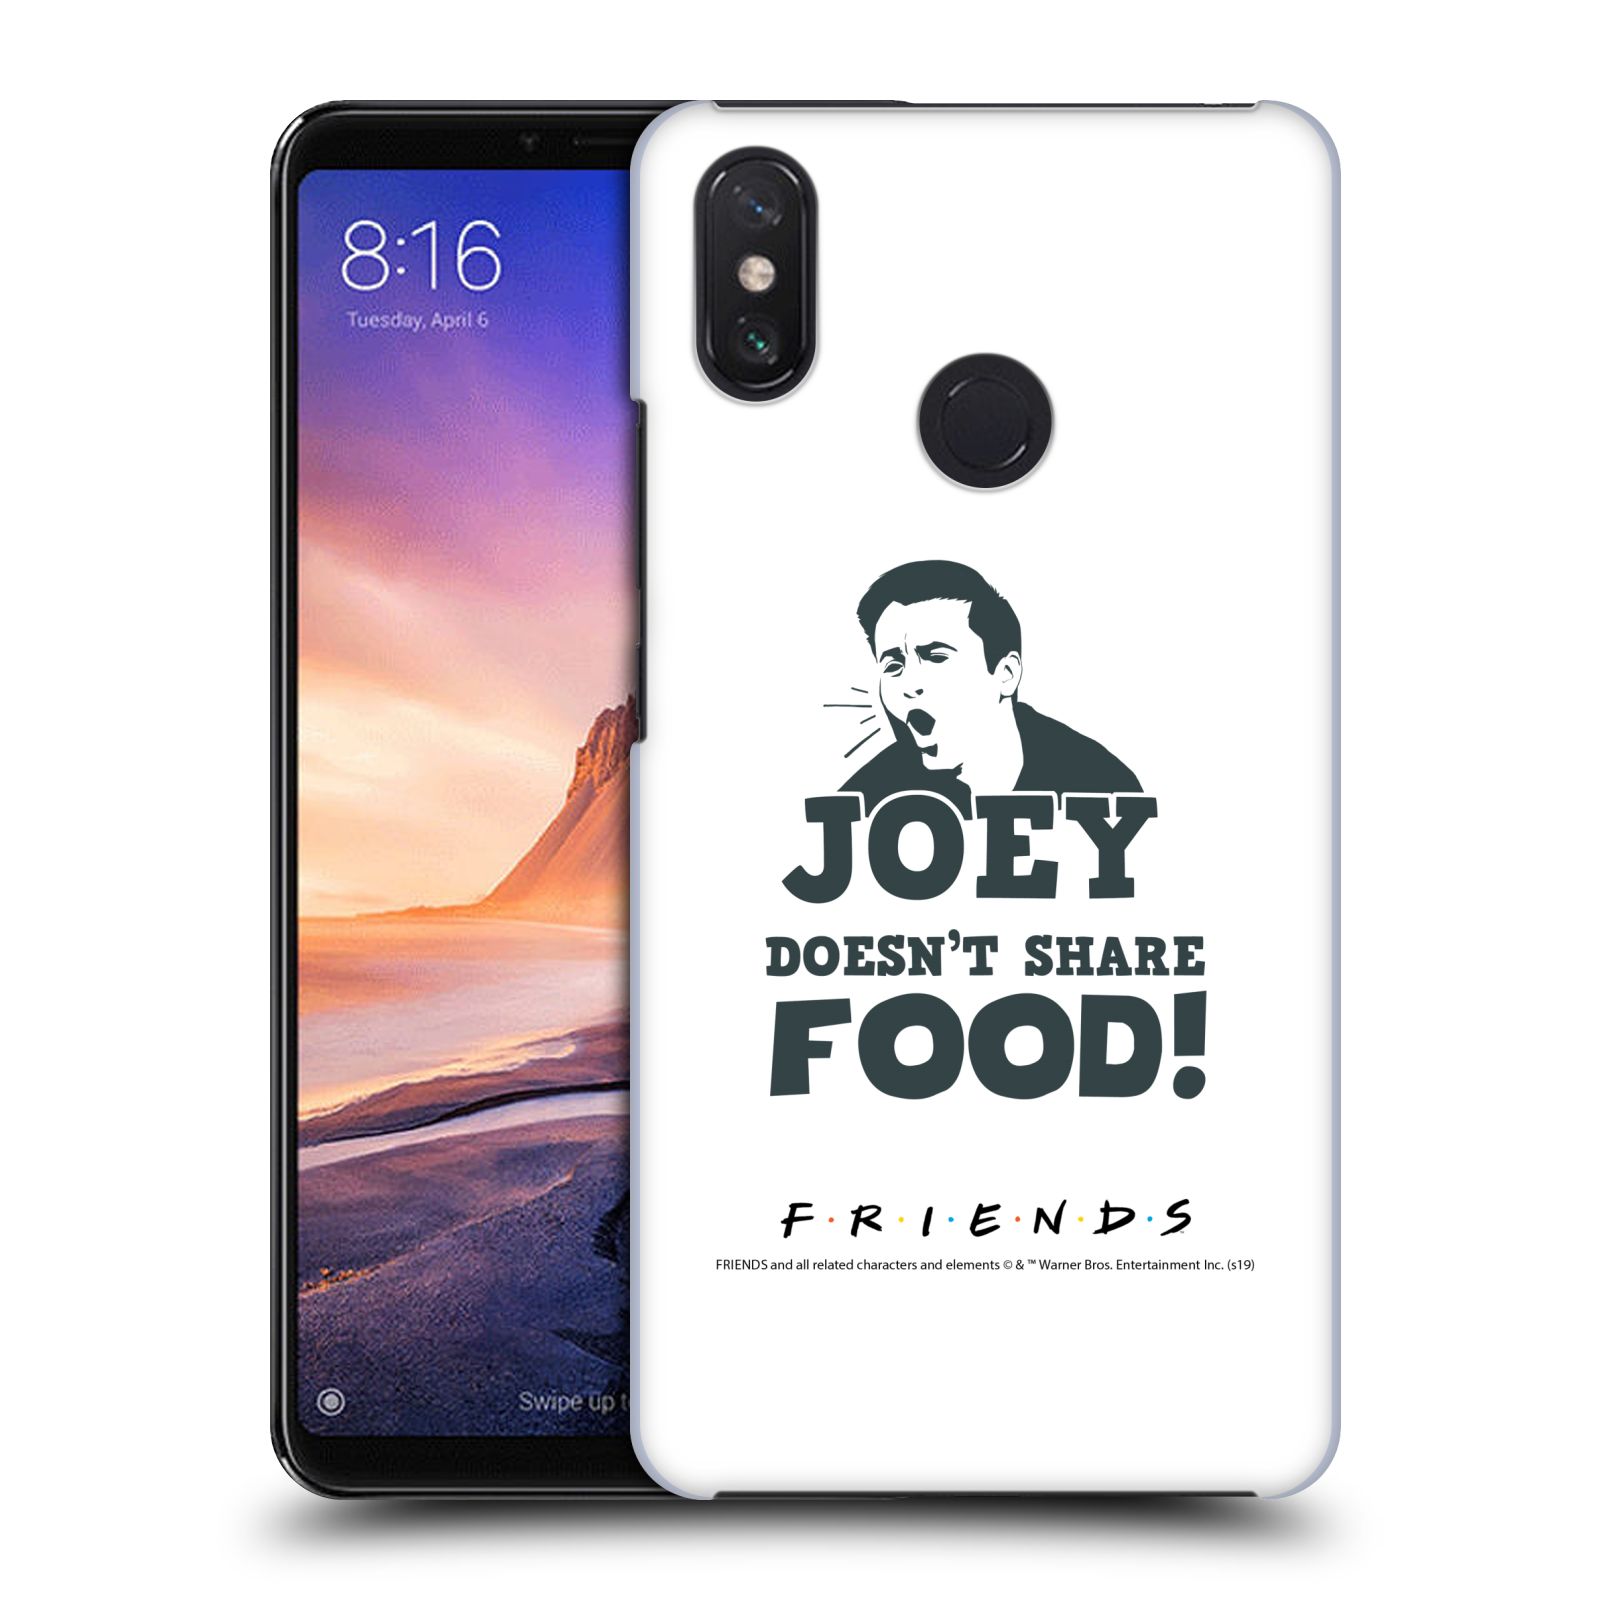 Pouzdro na mobil Xiaomi Mi Max 3 - HEAD CASE - Seriál Přátelé - Joey se o jídlo nedělí